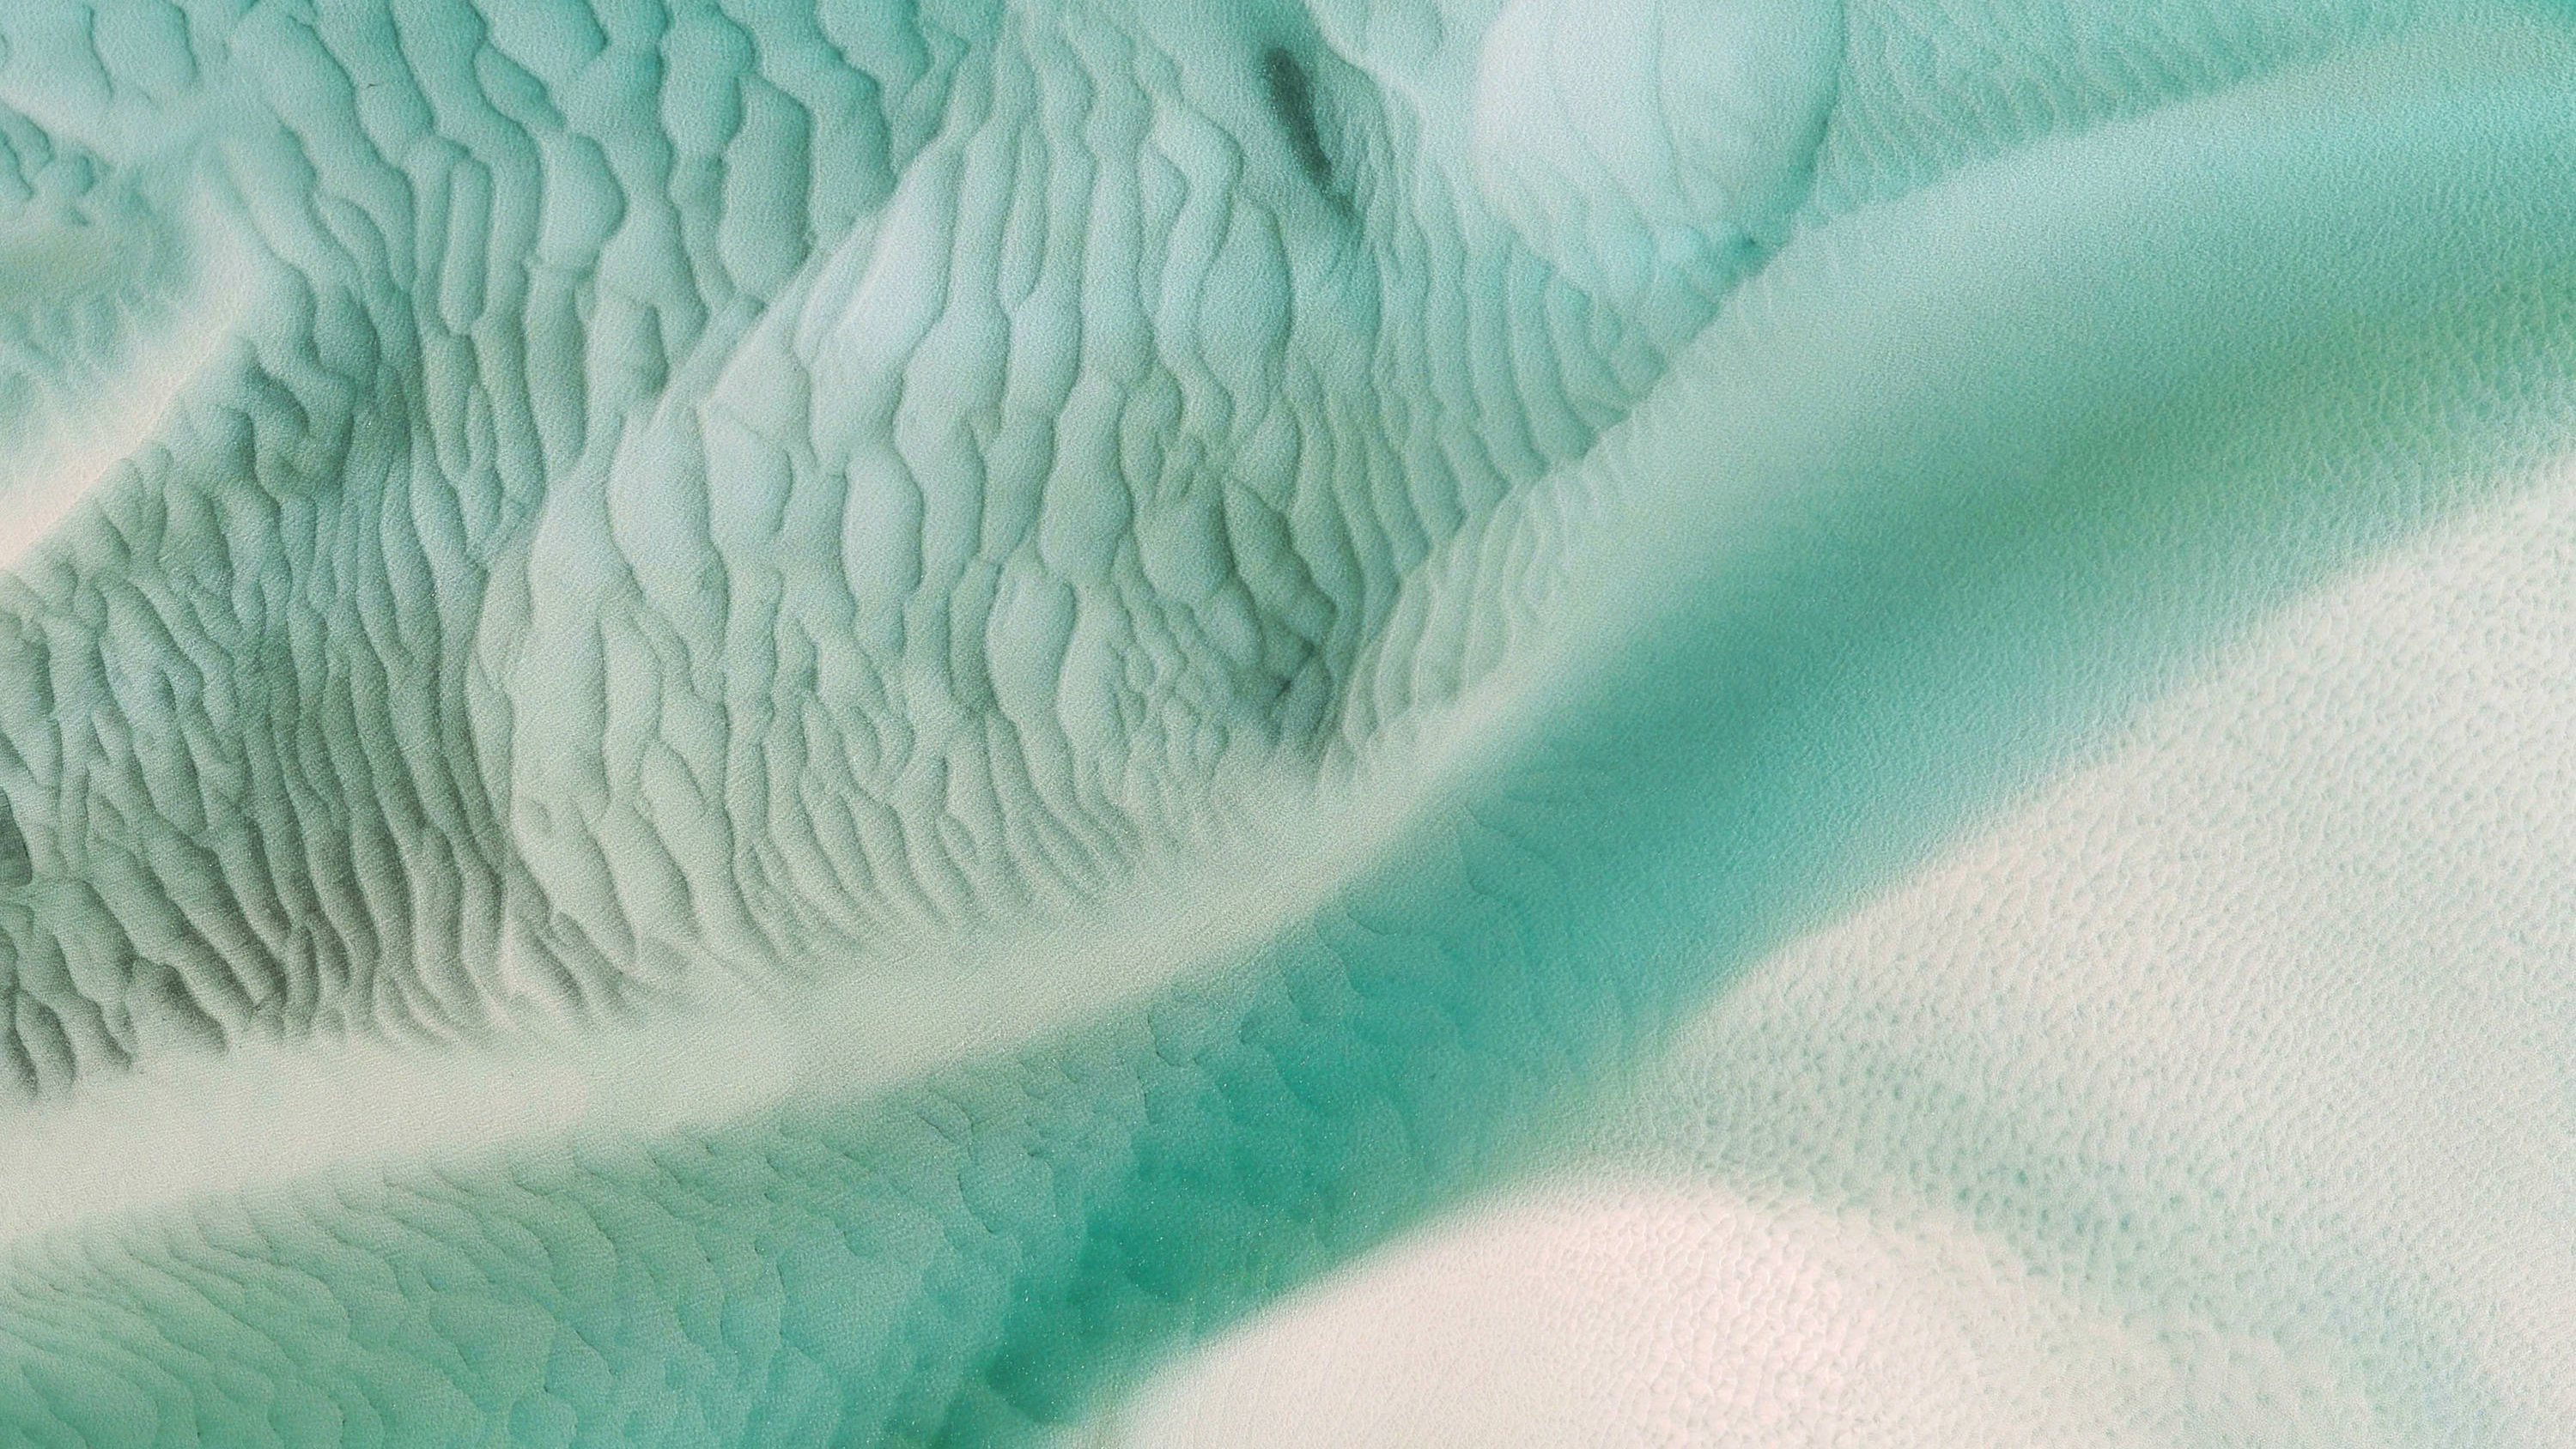 sfondo di google earth,acqua,verde,turchese,tessile,onda